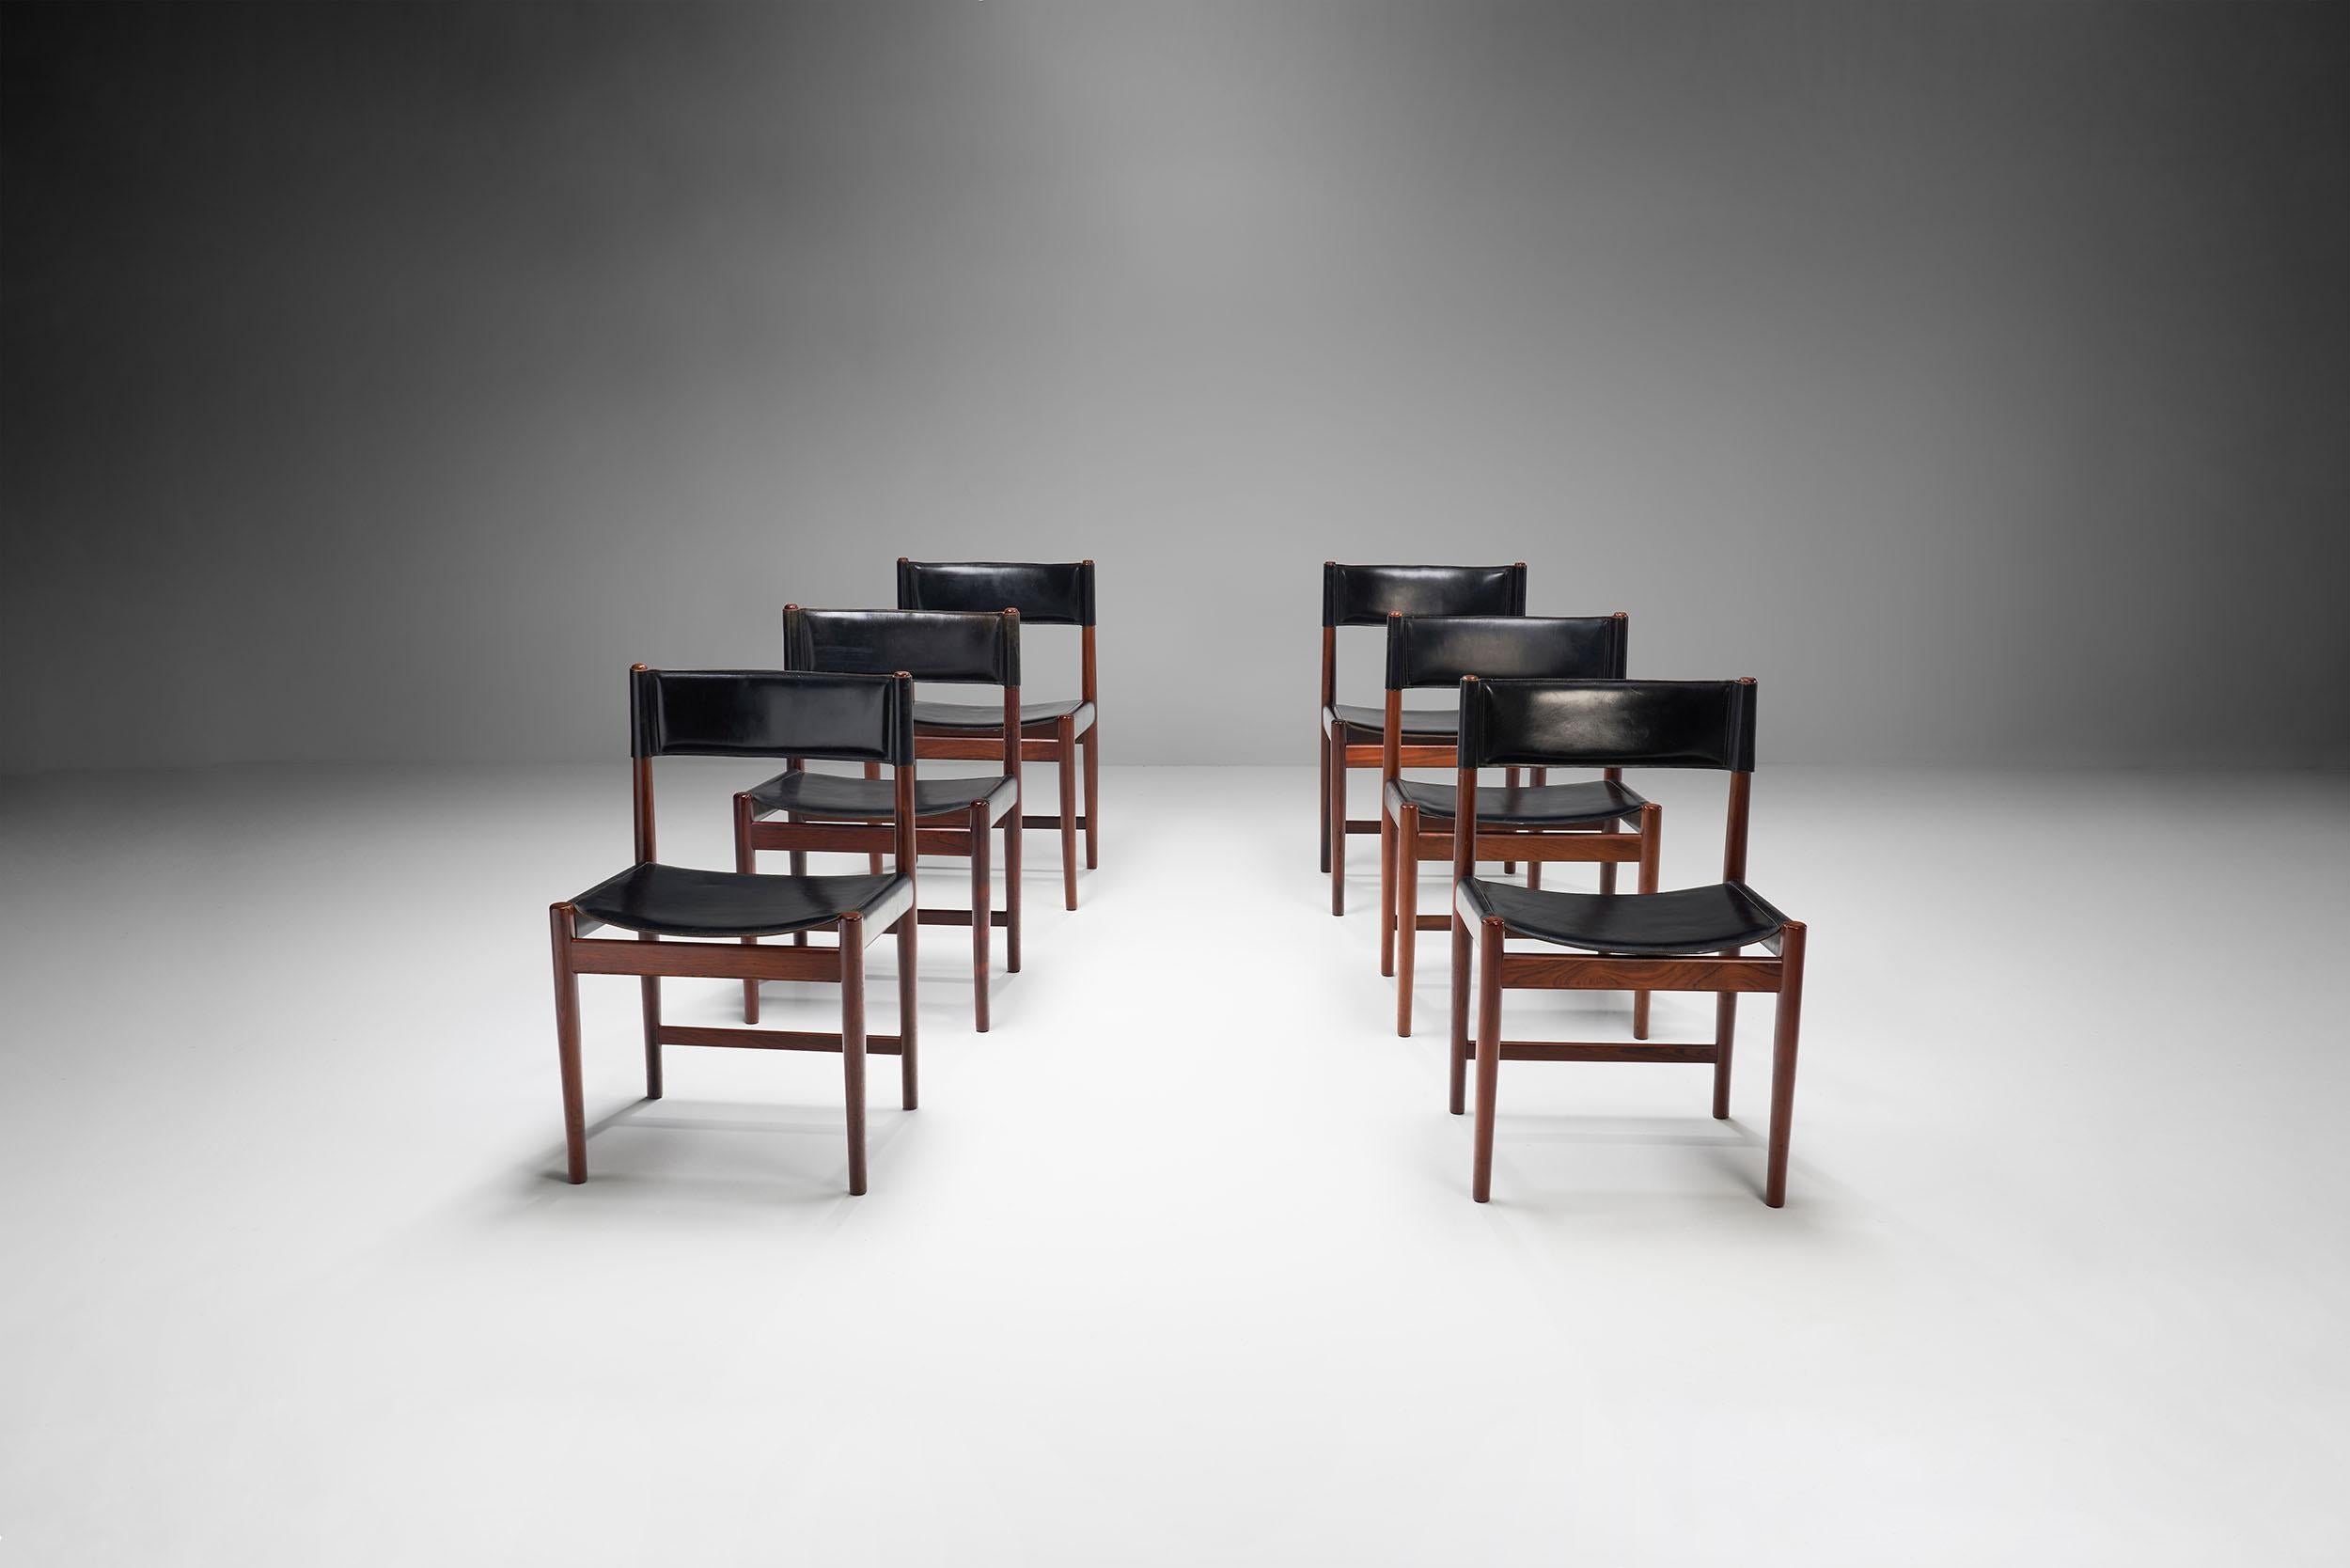 Cet ensemble de six chaises de salle à manger du designer danois Kurt Østervig est un bel exemple de design danois simple et raffiné du milieu du siècle dernier.

Les chaises en cuir noir sont fabriquées en bois massif foncé. La couleur profonde du